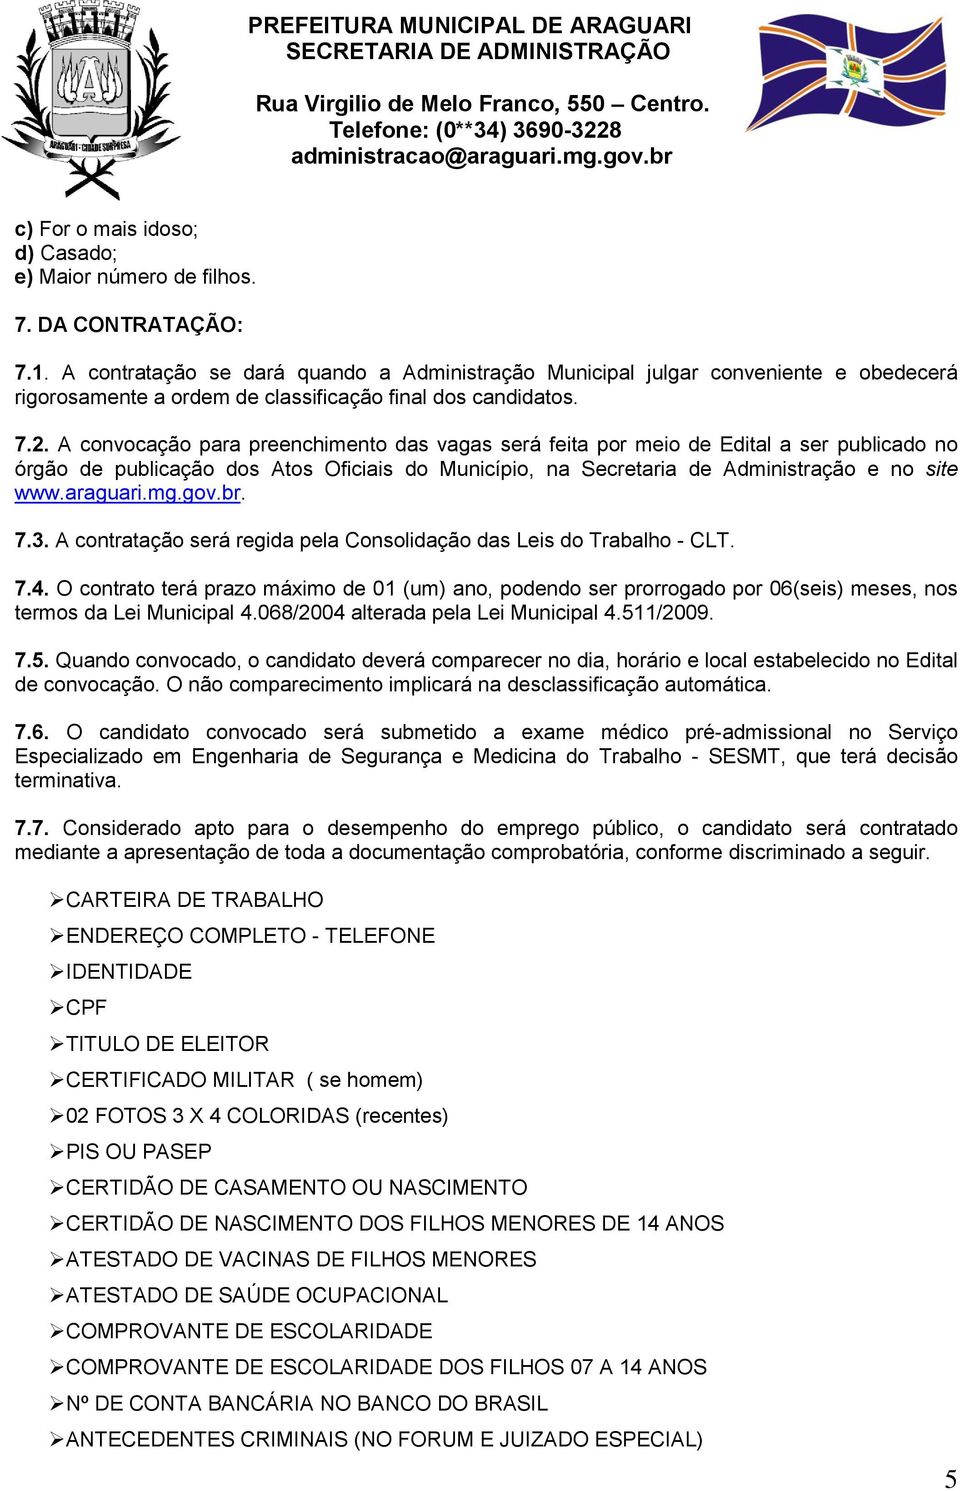 A convocação para preenchimento das vagas será feita por meio de Edital a ser publicado no órgão de publicação dos Atos Oficiais do Município, na Secretaria de Administração e no site www.araguari.mg.